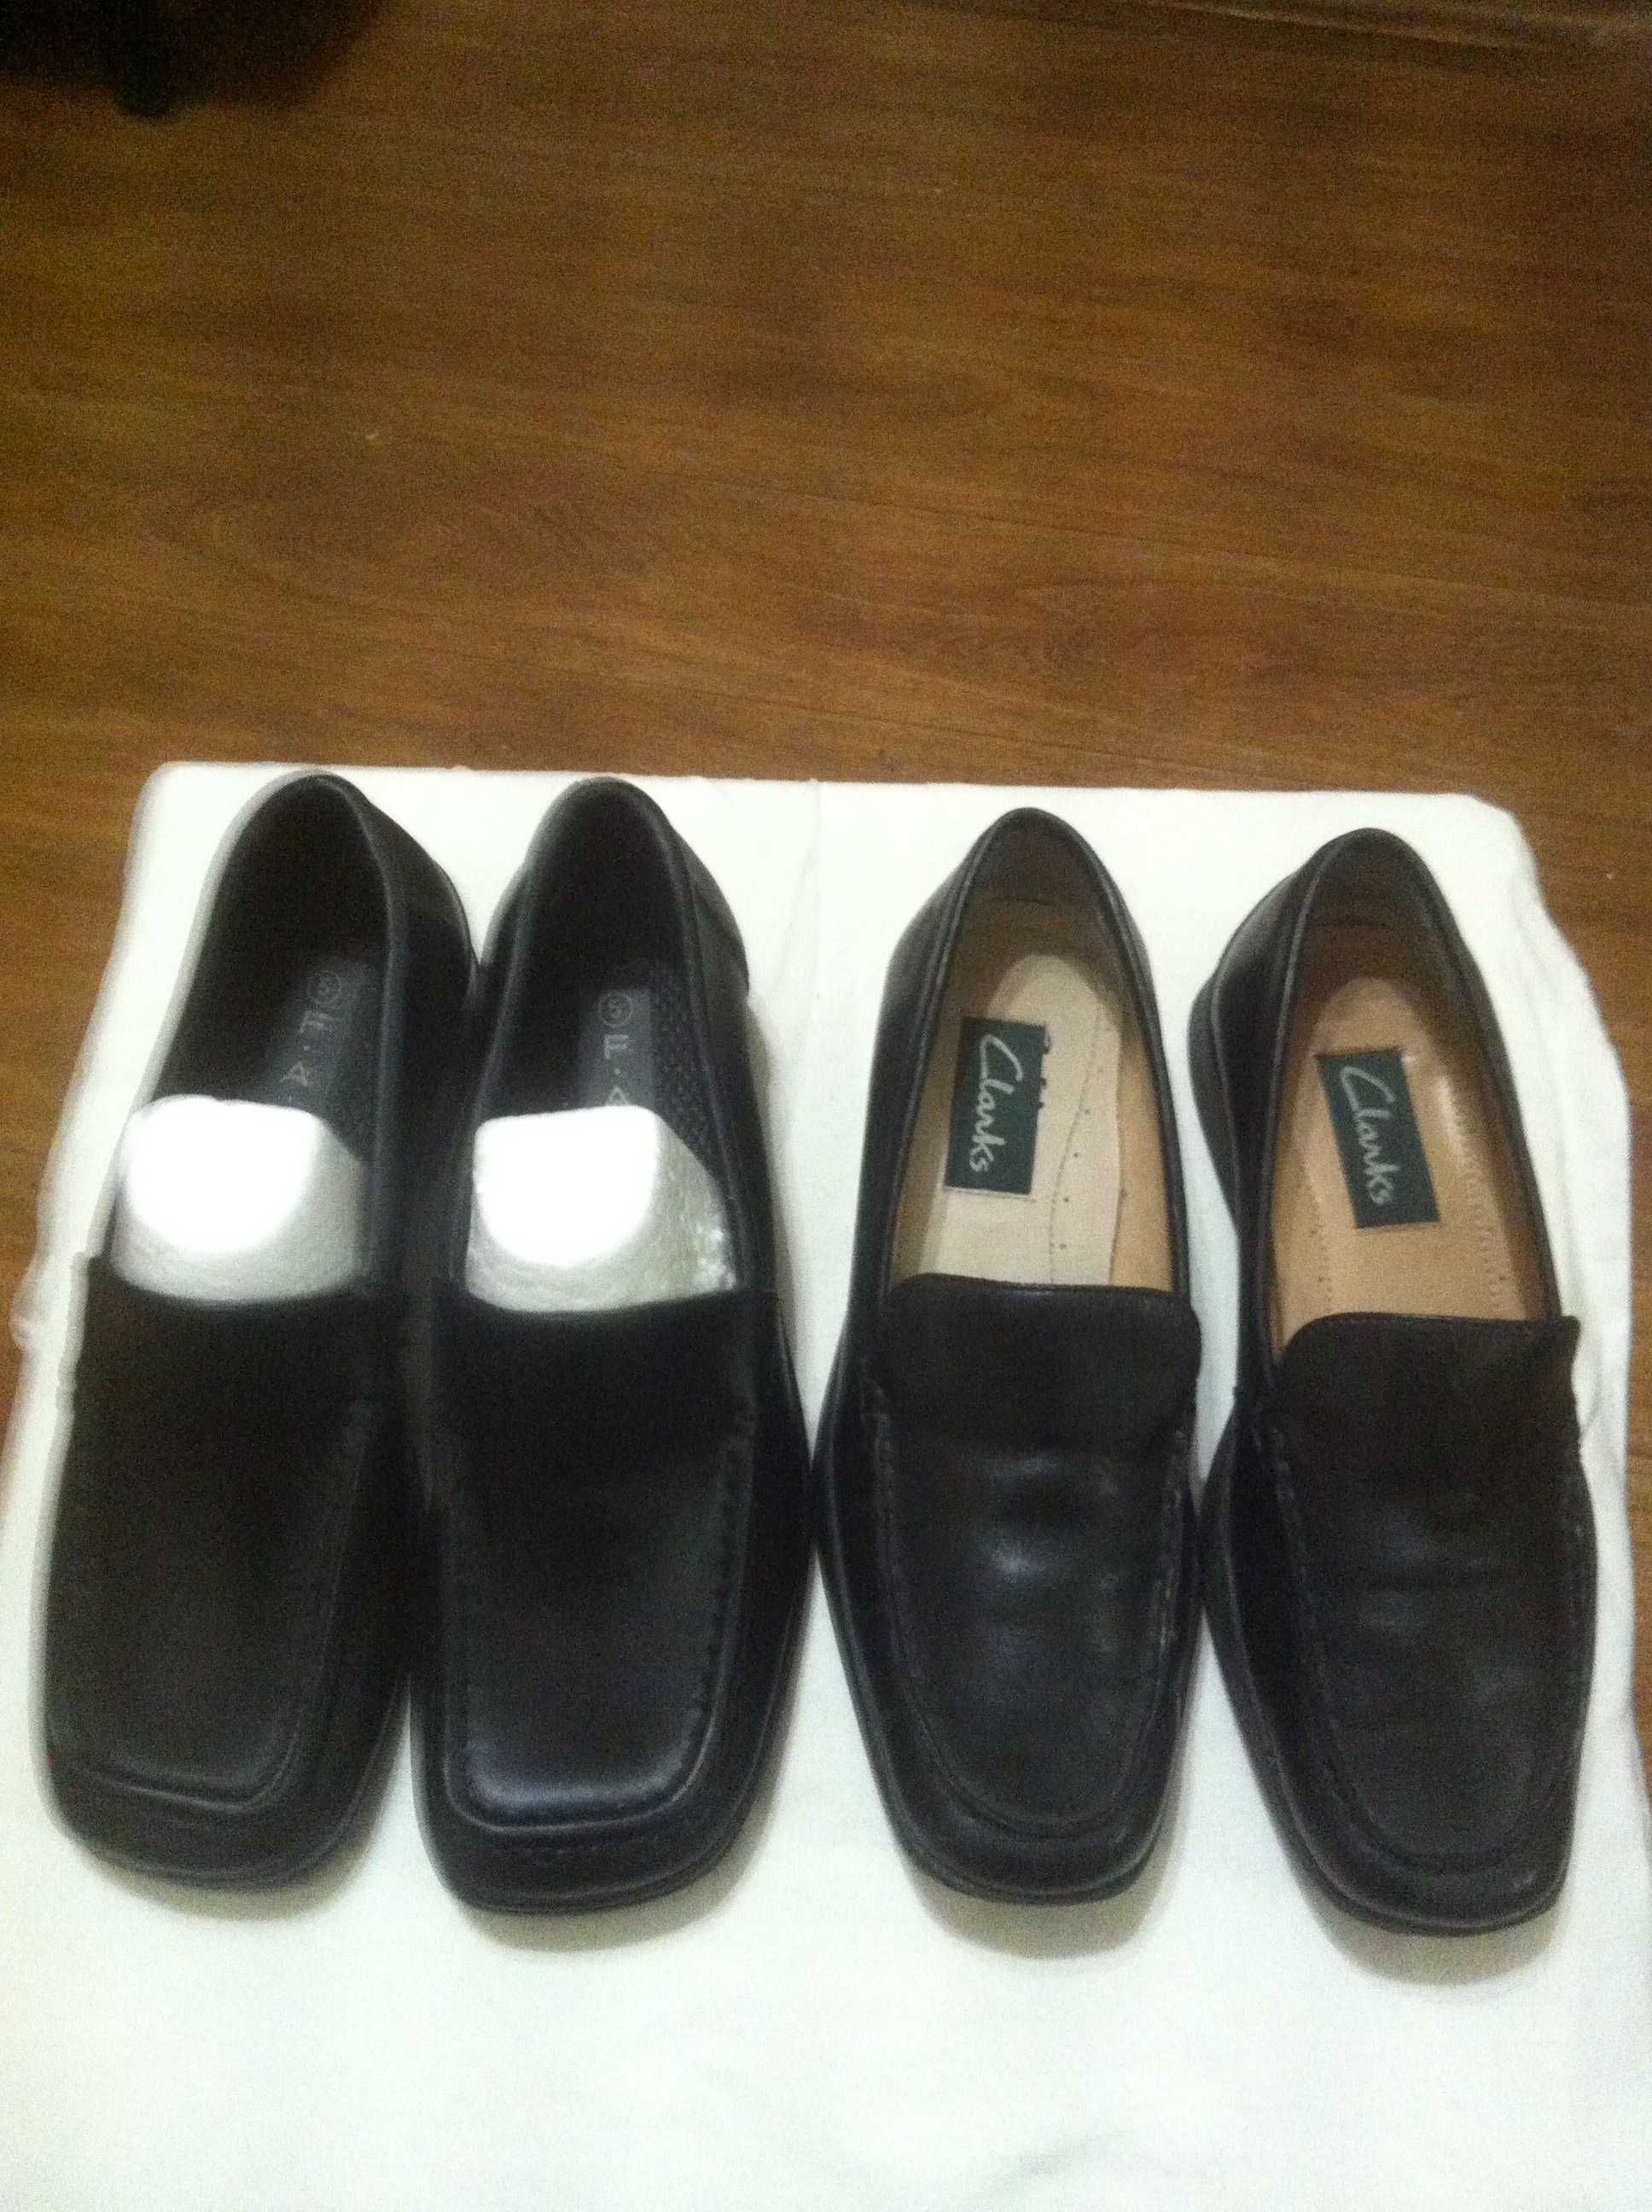 Женская  импортная обувь  новая и бу , разных  размеров.